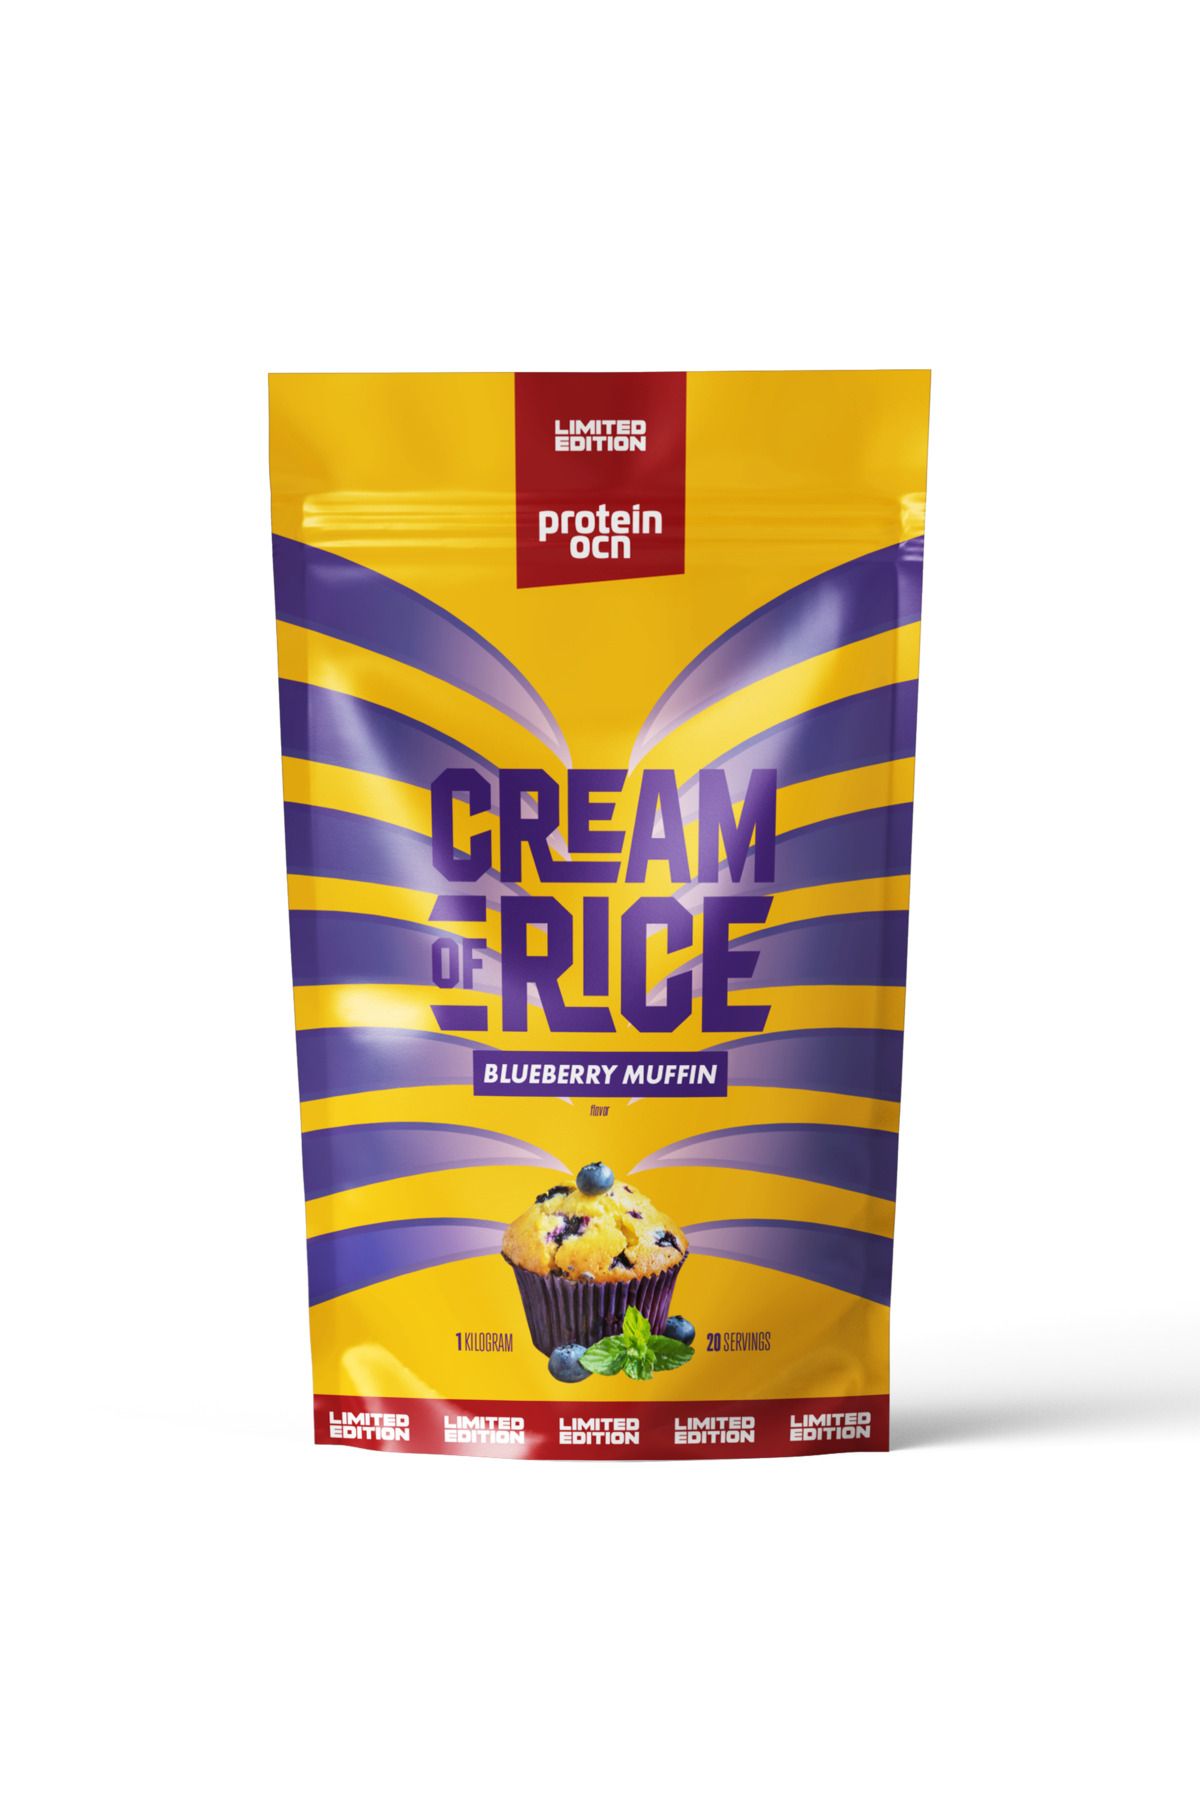 Proteinocean Cream Of Rice | Pirinç Kreması - Limited Edition - Blueberry Muffin - 1kg - 20 Servis